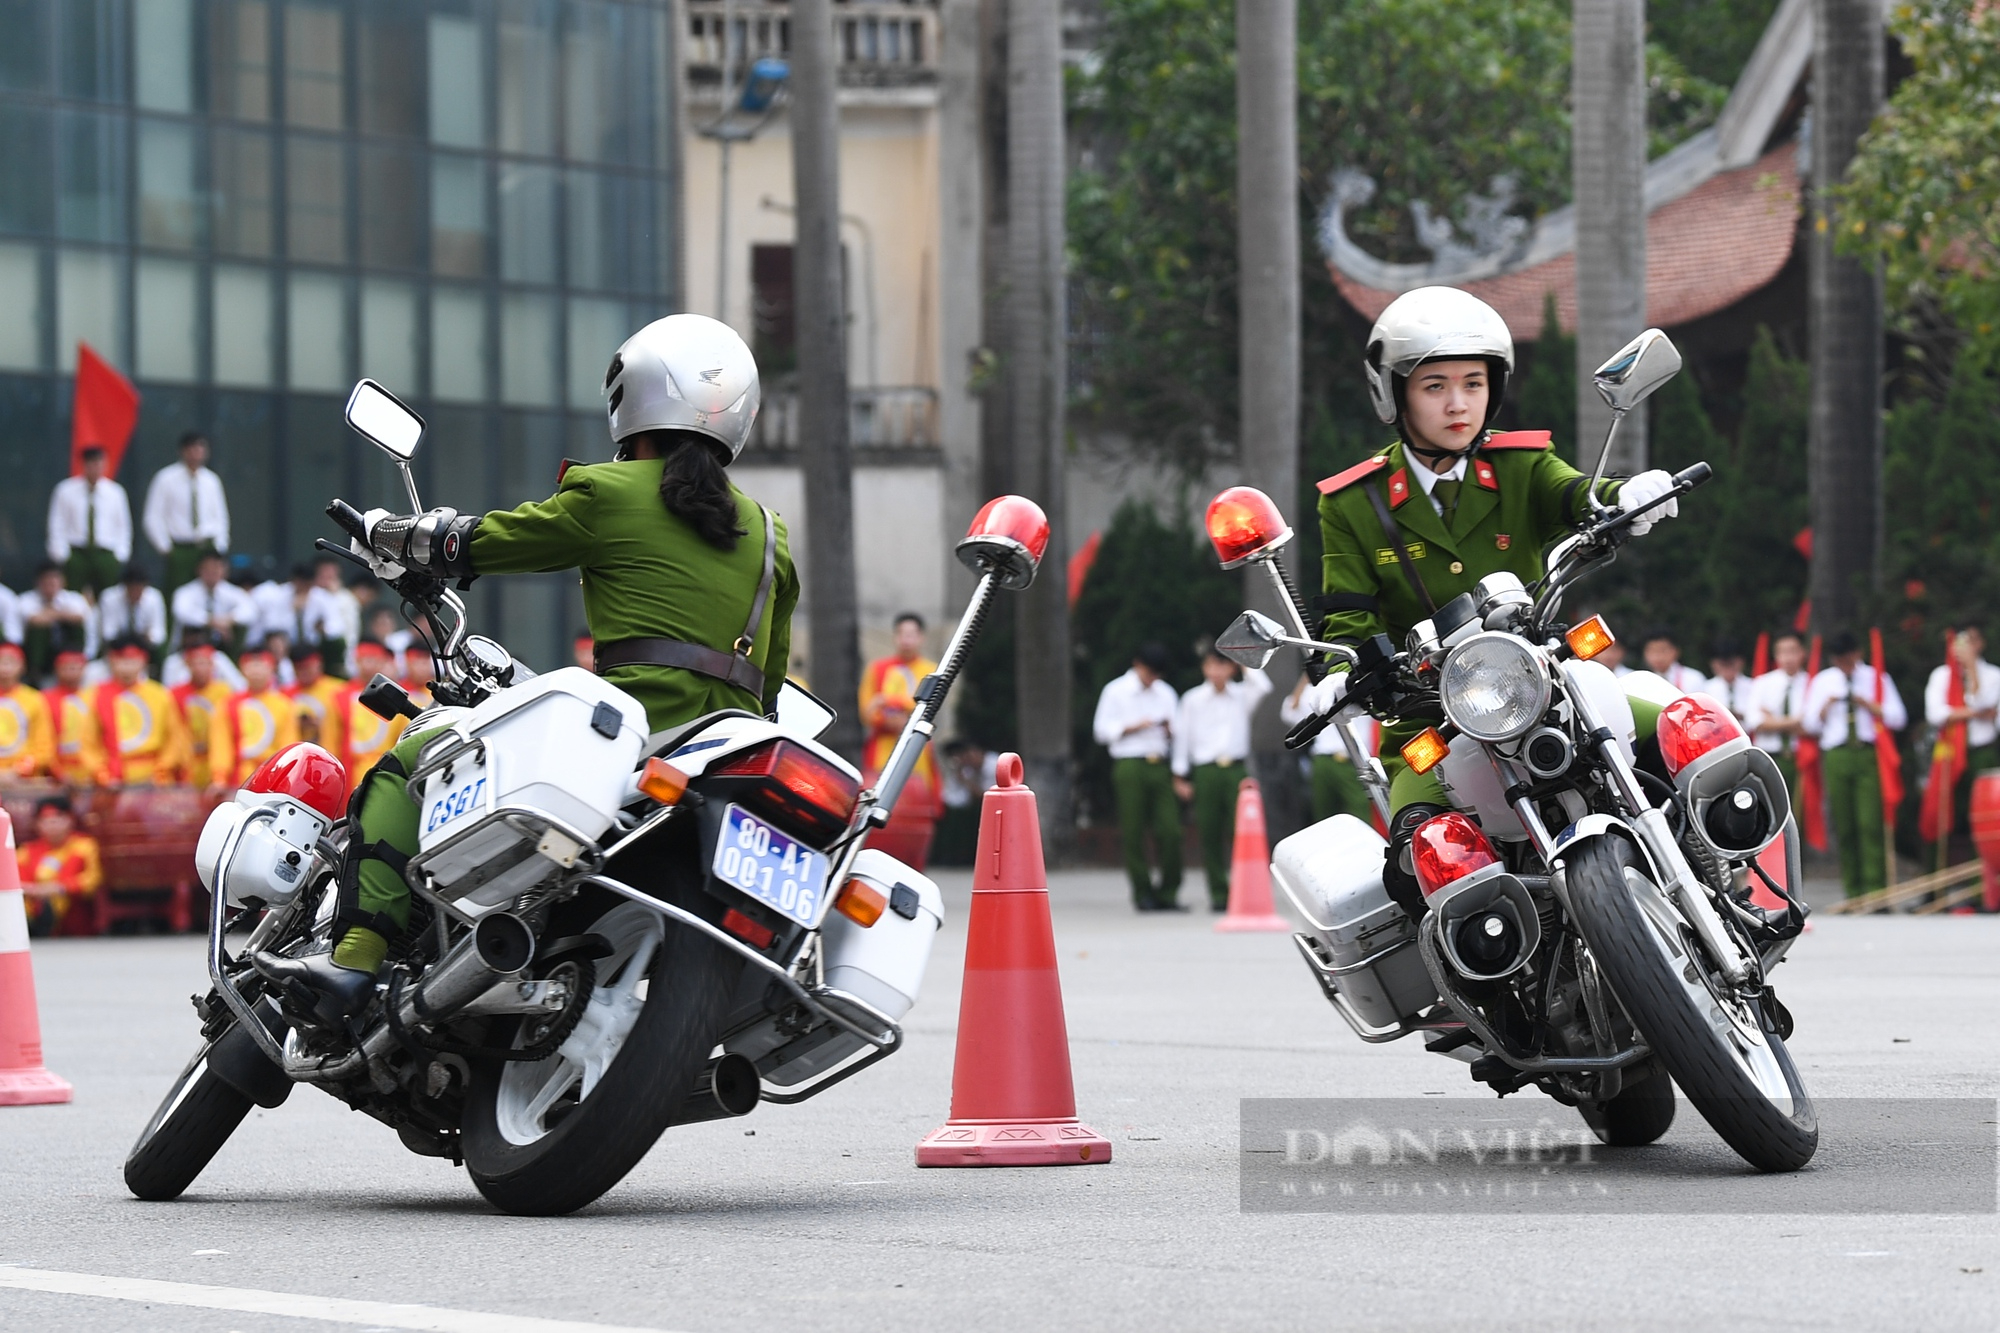 Màn biểu diễn võ thuật, lái xe mô khó rời mắt của hàng trăm sinh viên Học viện Cảnh sát - Ảnh 7.